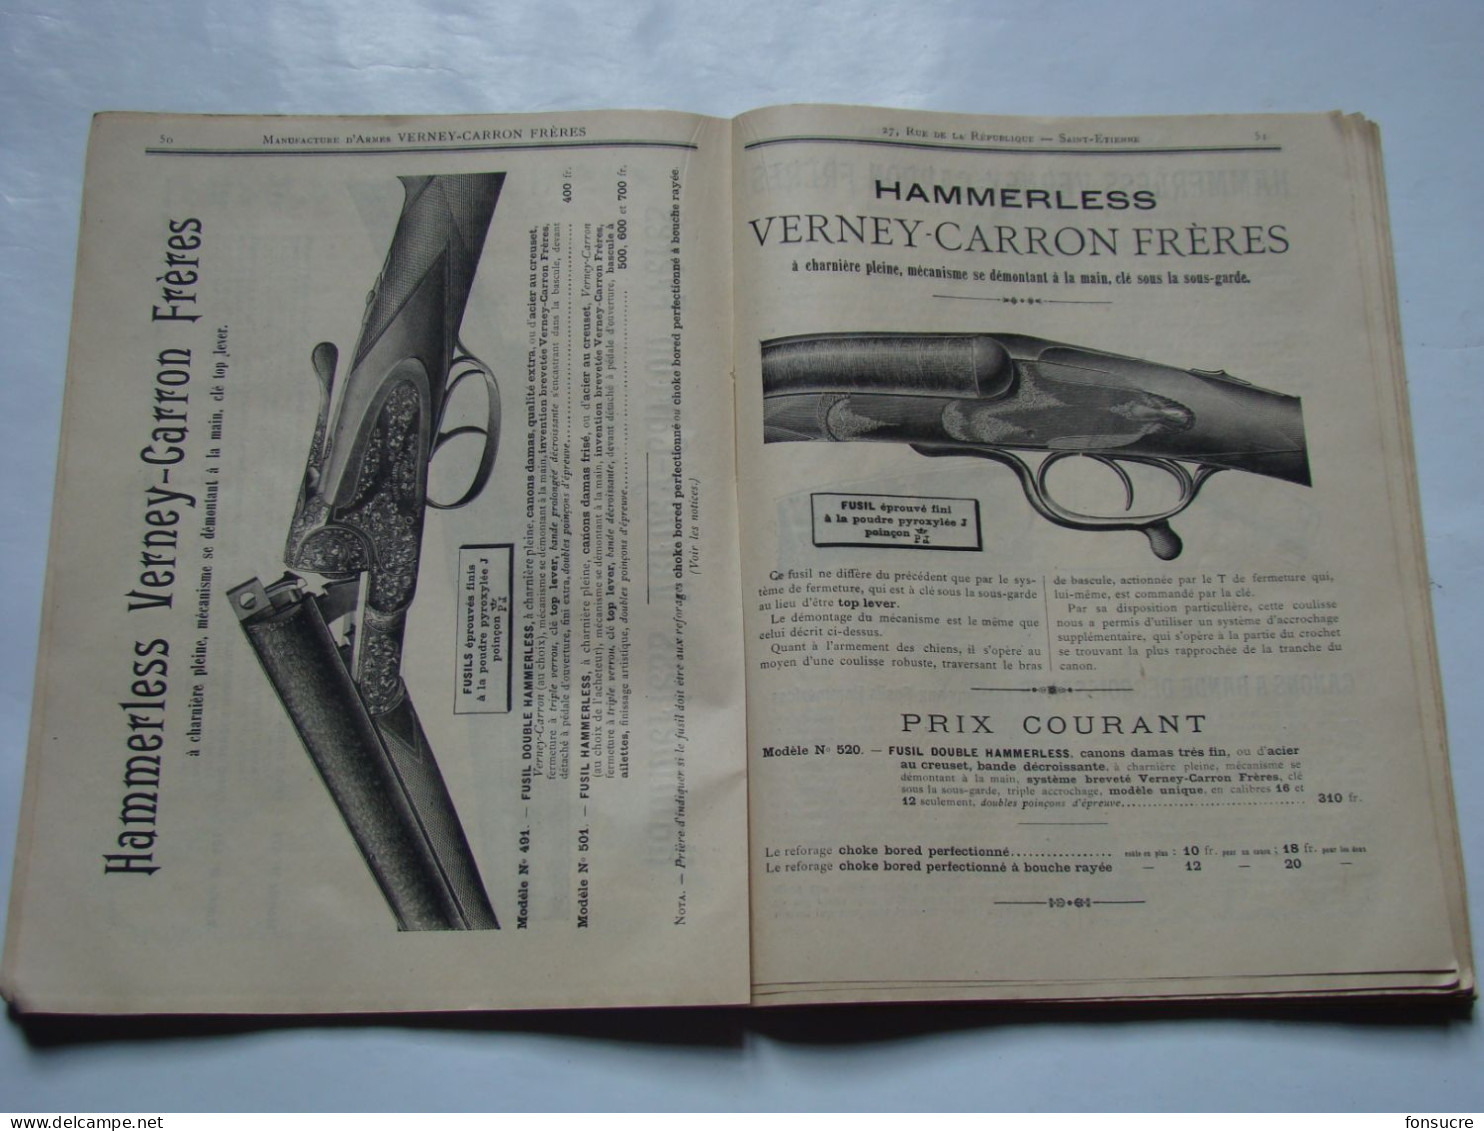 CHr Catalogue VERNEY CARRON Manufacture D'Armes St Etienne 42 Loire 1896 Fusil Carabine Revolver Chasse Cartouche Balle - Matériel Et Accessoires